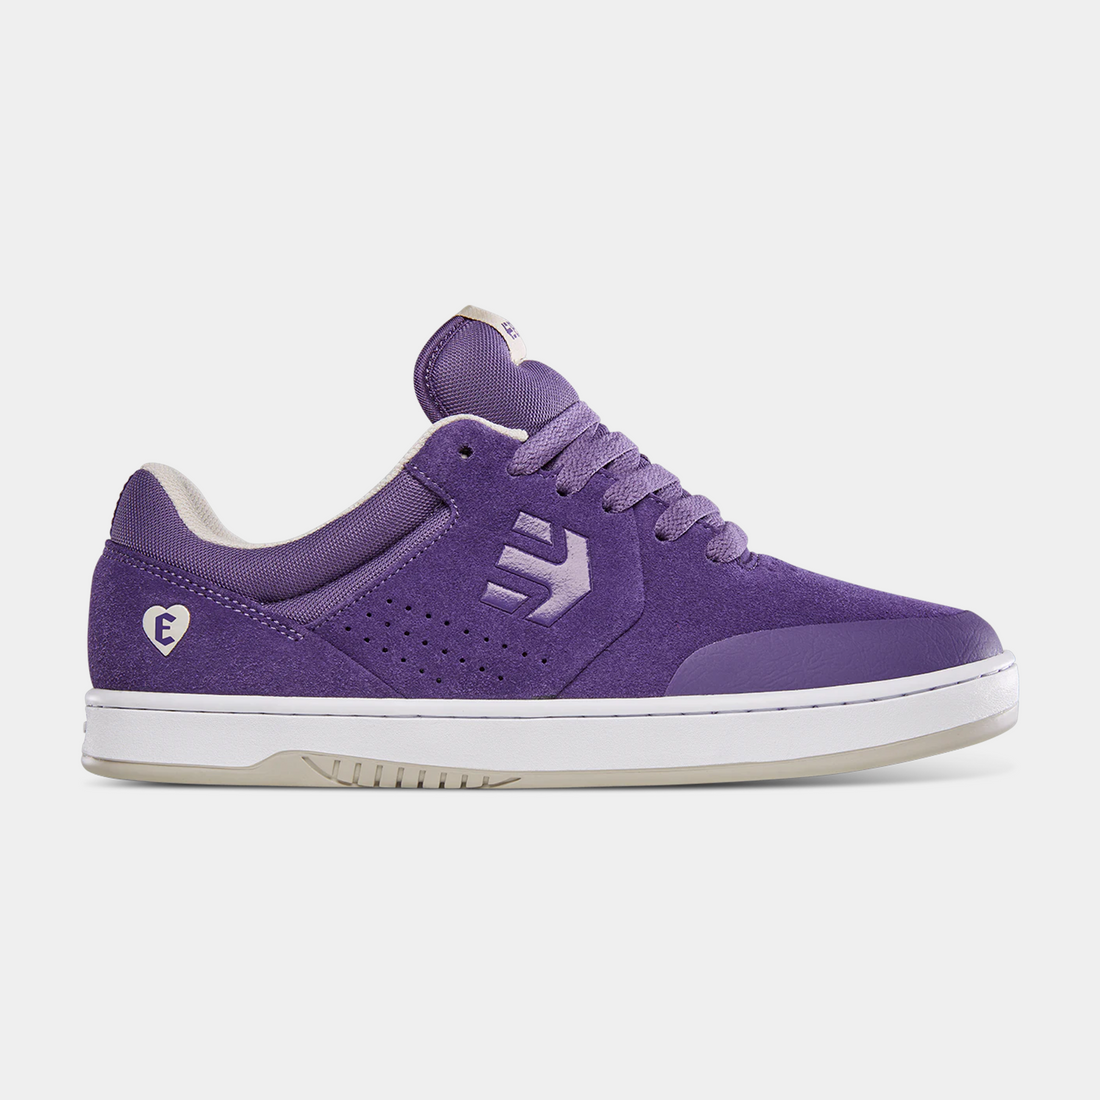 paire de chaussure Etnies marana violette